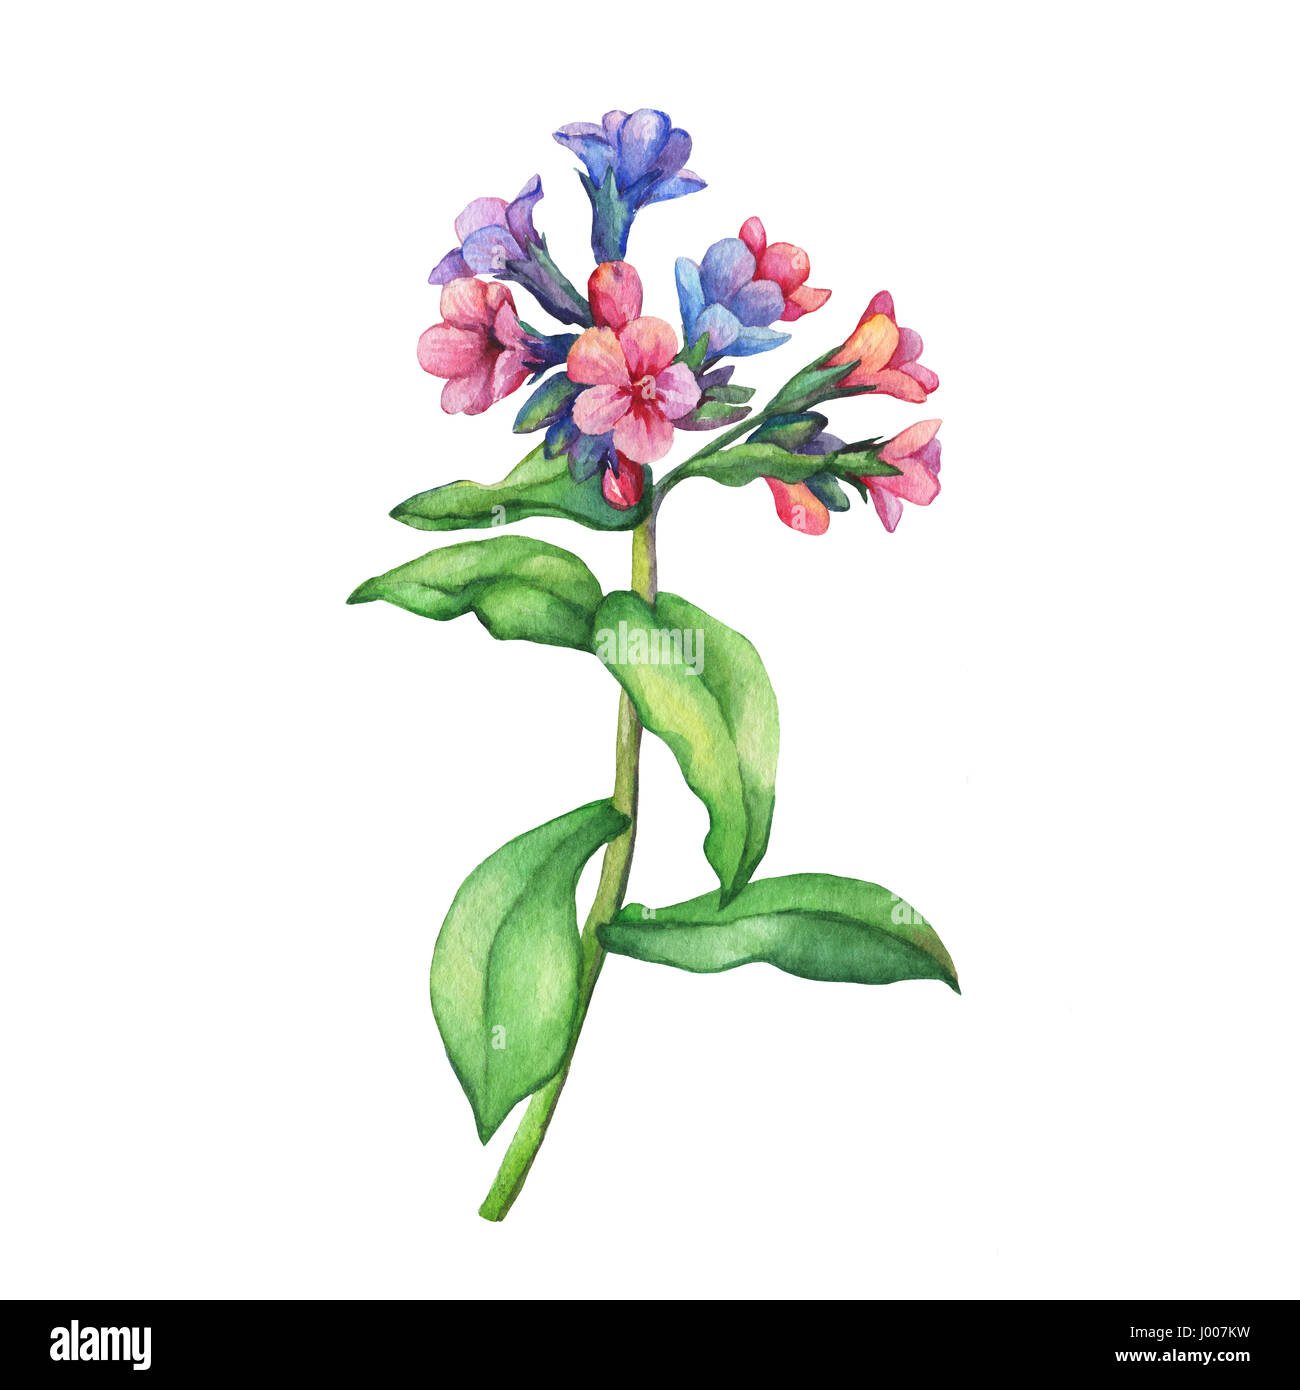 Illustrazione dei fiori selvatici primaverili - medicinale per il lungwort scuro (Pulmonaria officinalis). Pittura ad acquerello disegnata a mano su sfondo bianco. Foto Stock